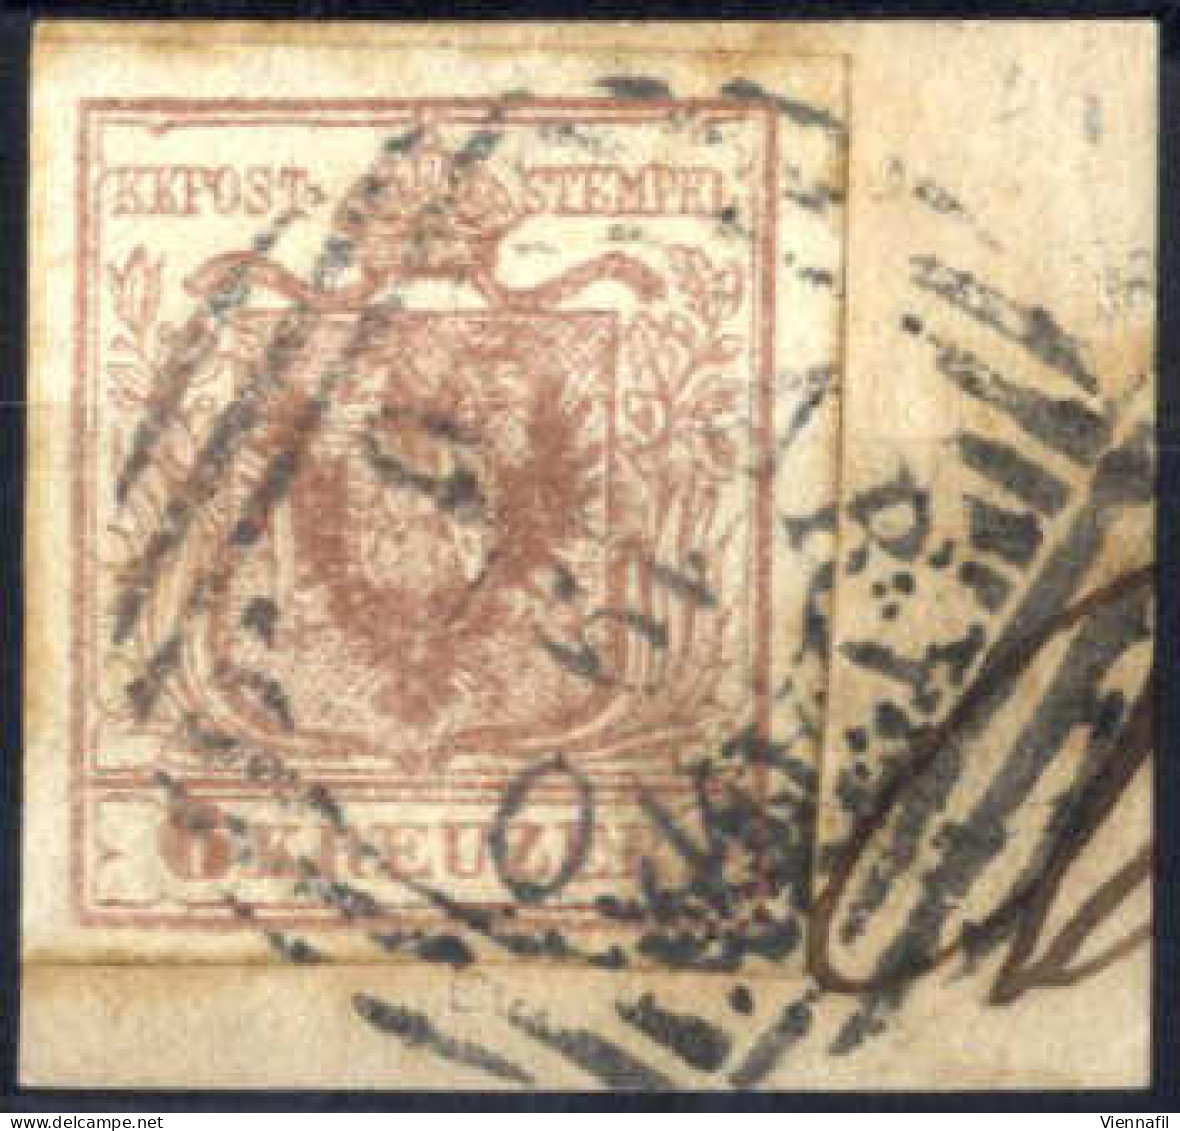 Piece 1850, 6 Kreuzer (I°tipo) Su Frammento "ARIANO 19/6" (annullo LOV), Raro Uso Di Francobolli Austriaci In Lombardo-V - Lombardo-Venetien